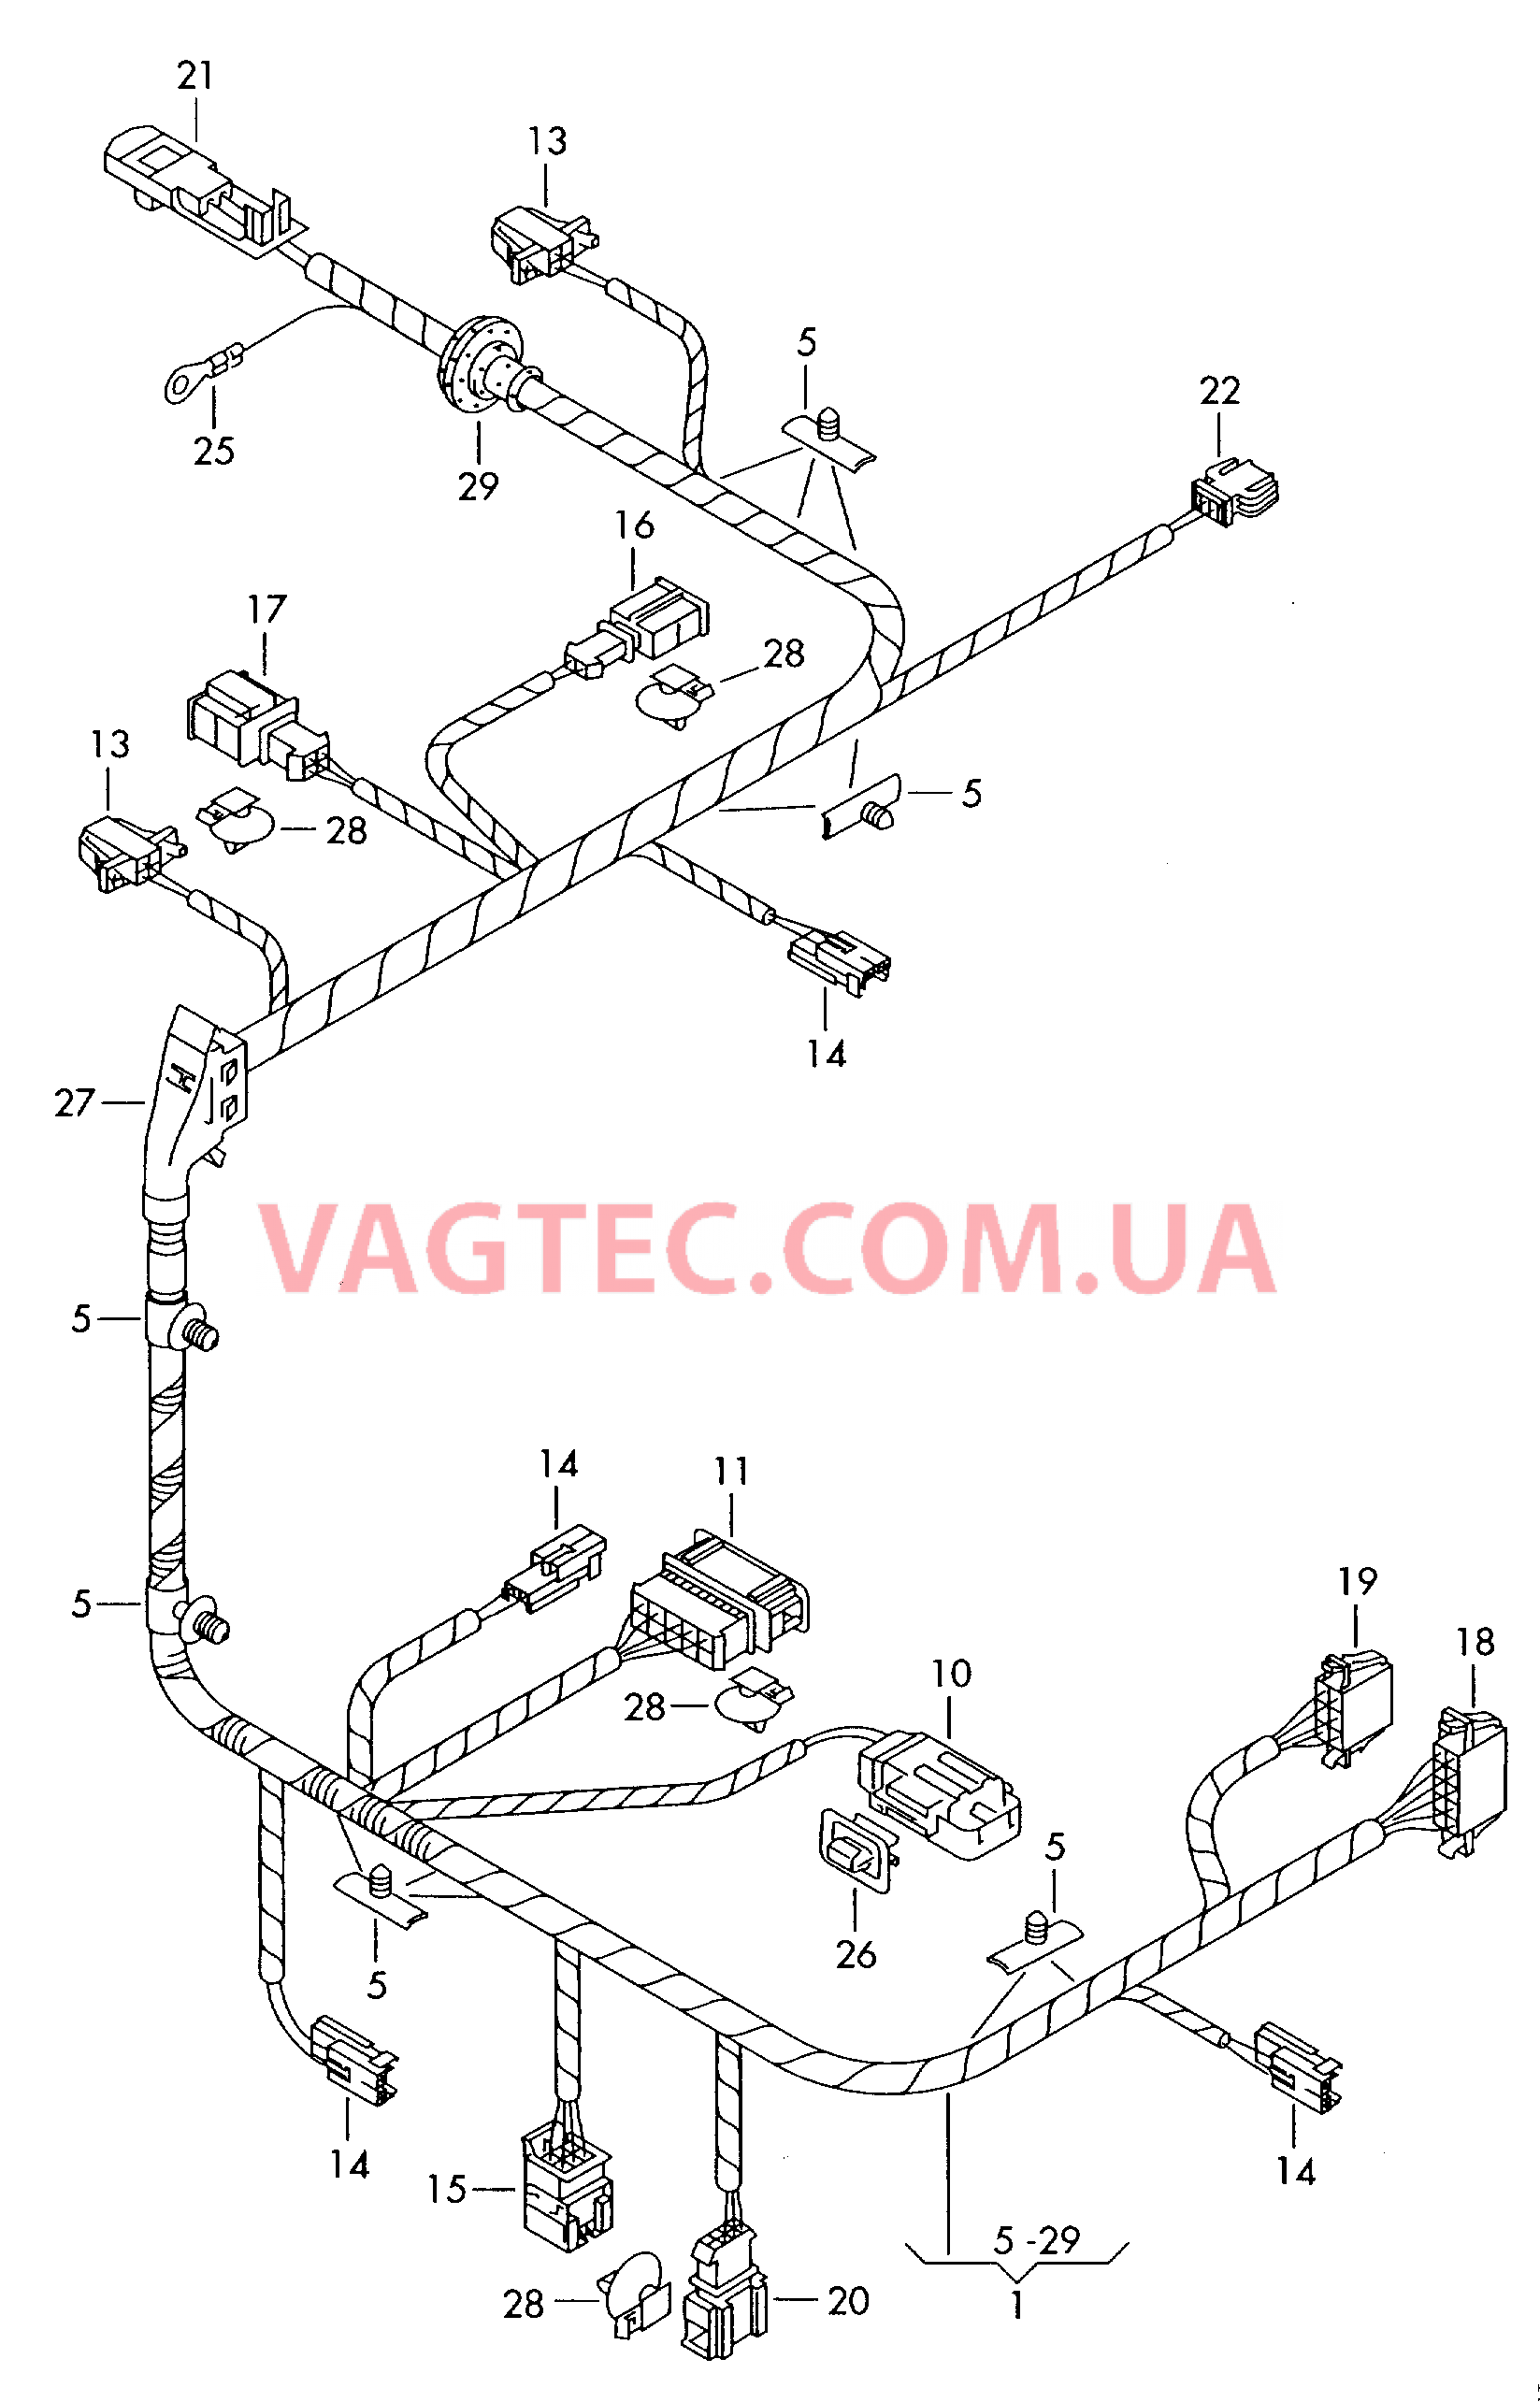 Жгут проводов сиденьяс электрорегулировкой  для а/м с 12-позиционной электрической регулировкой сидений  для VOLKSWAGEN Phaeton 2006